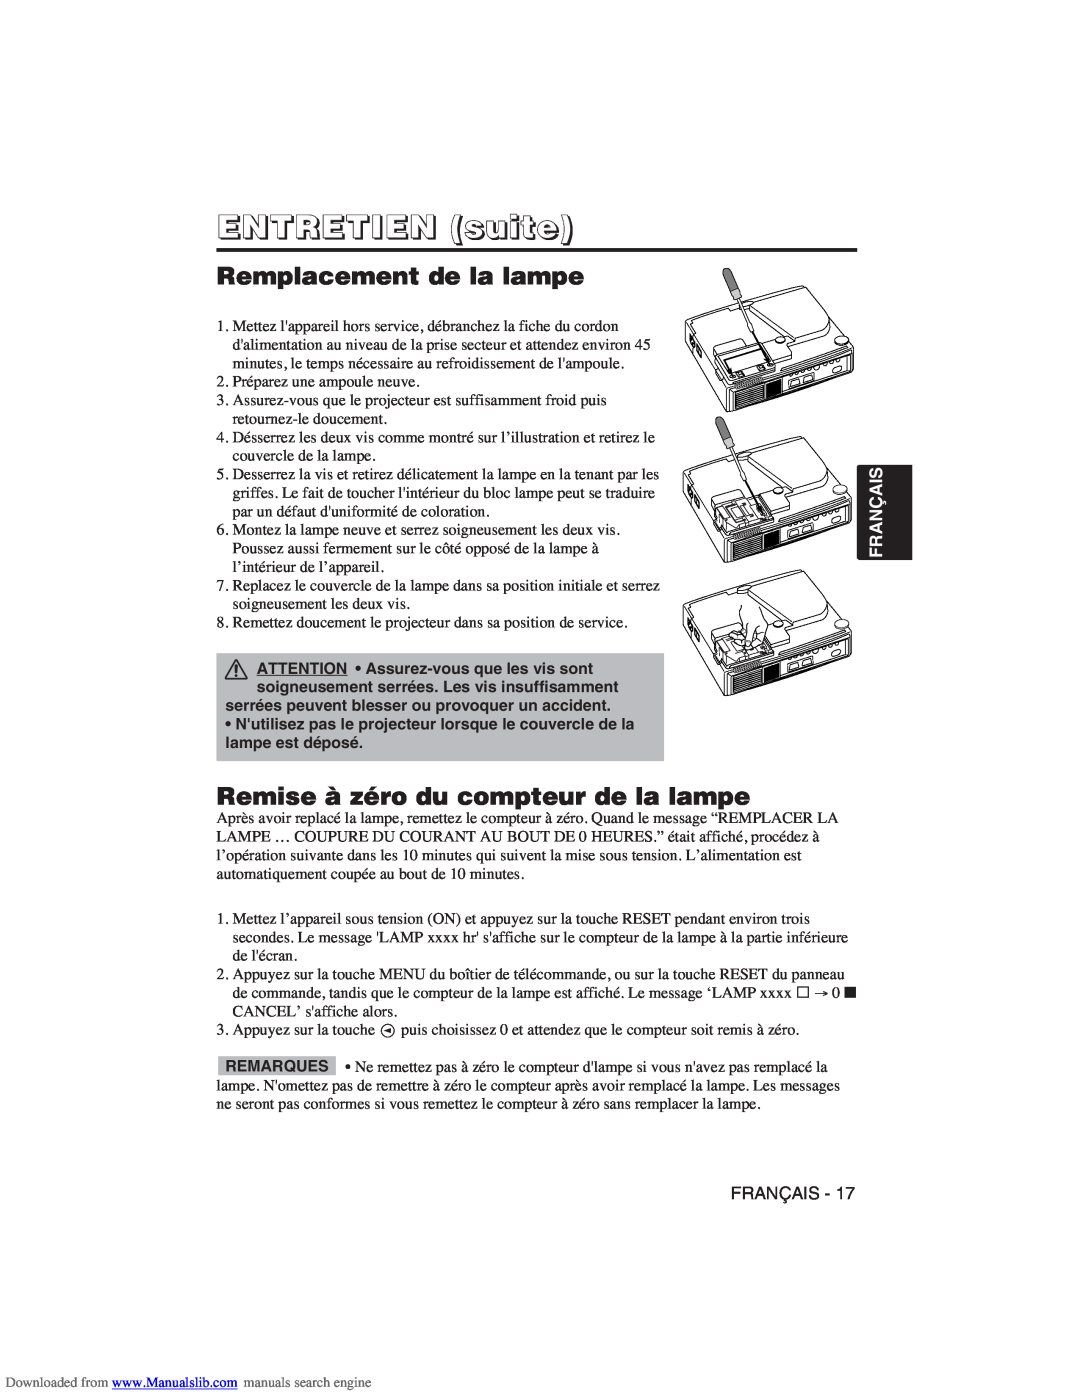 Hitachi CP-X275W user manual ENTRETIEN suite, Remplacement de la lampe, Remise à zéro du compteur de la lampe, Français 